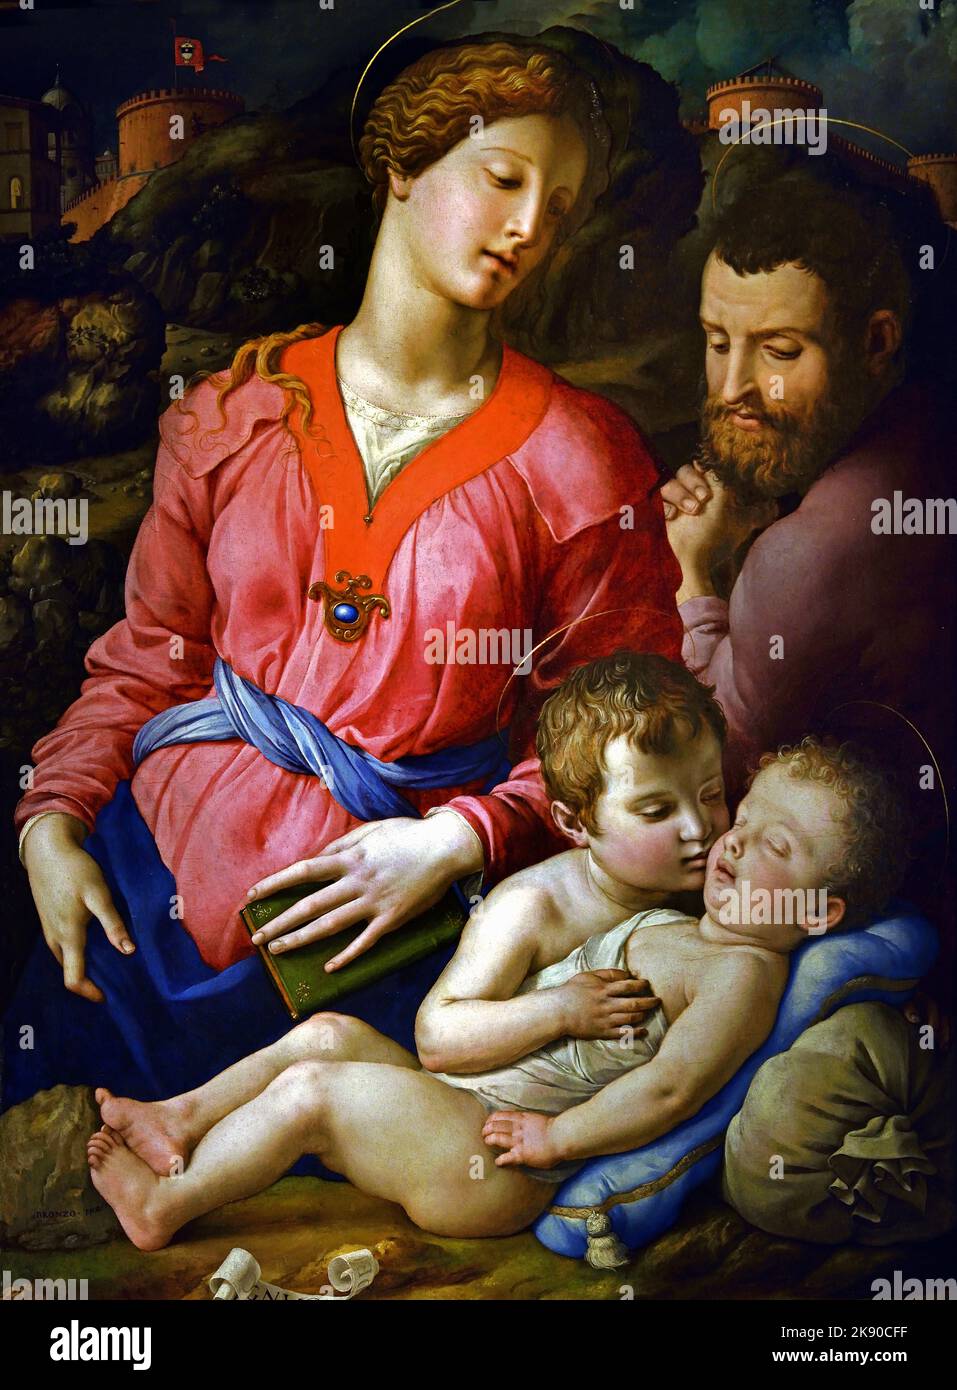 Die Heilige Familie Panciatichi - Sacra famiglia Panciatichi oder Madonna Panciatichi, 1540 , Bronzino Tori , Nov 17 1503 - Nov 23 1572 , Italienischer manieristischer Maler aus Florenz, Italien. Agnolo di Cosimo, sagte, il Bronzino, 1503-1752 Stockfoto